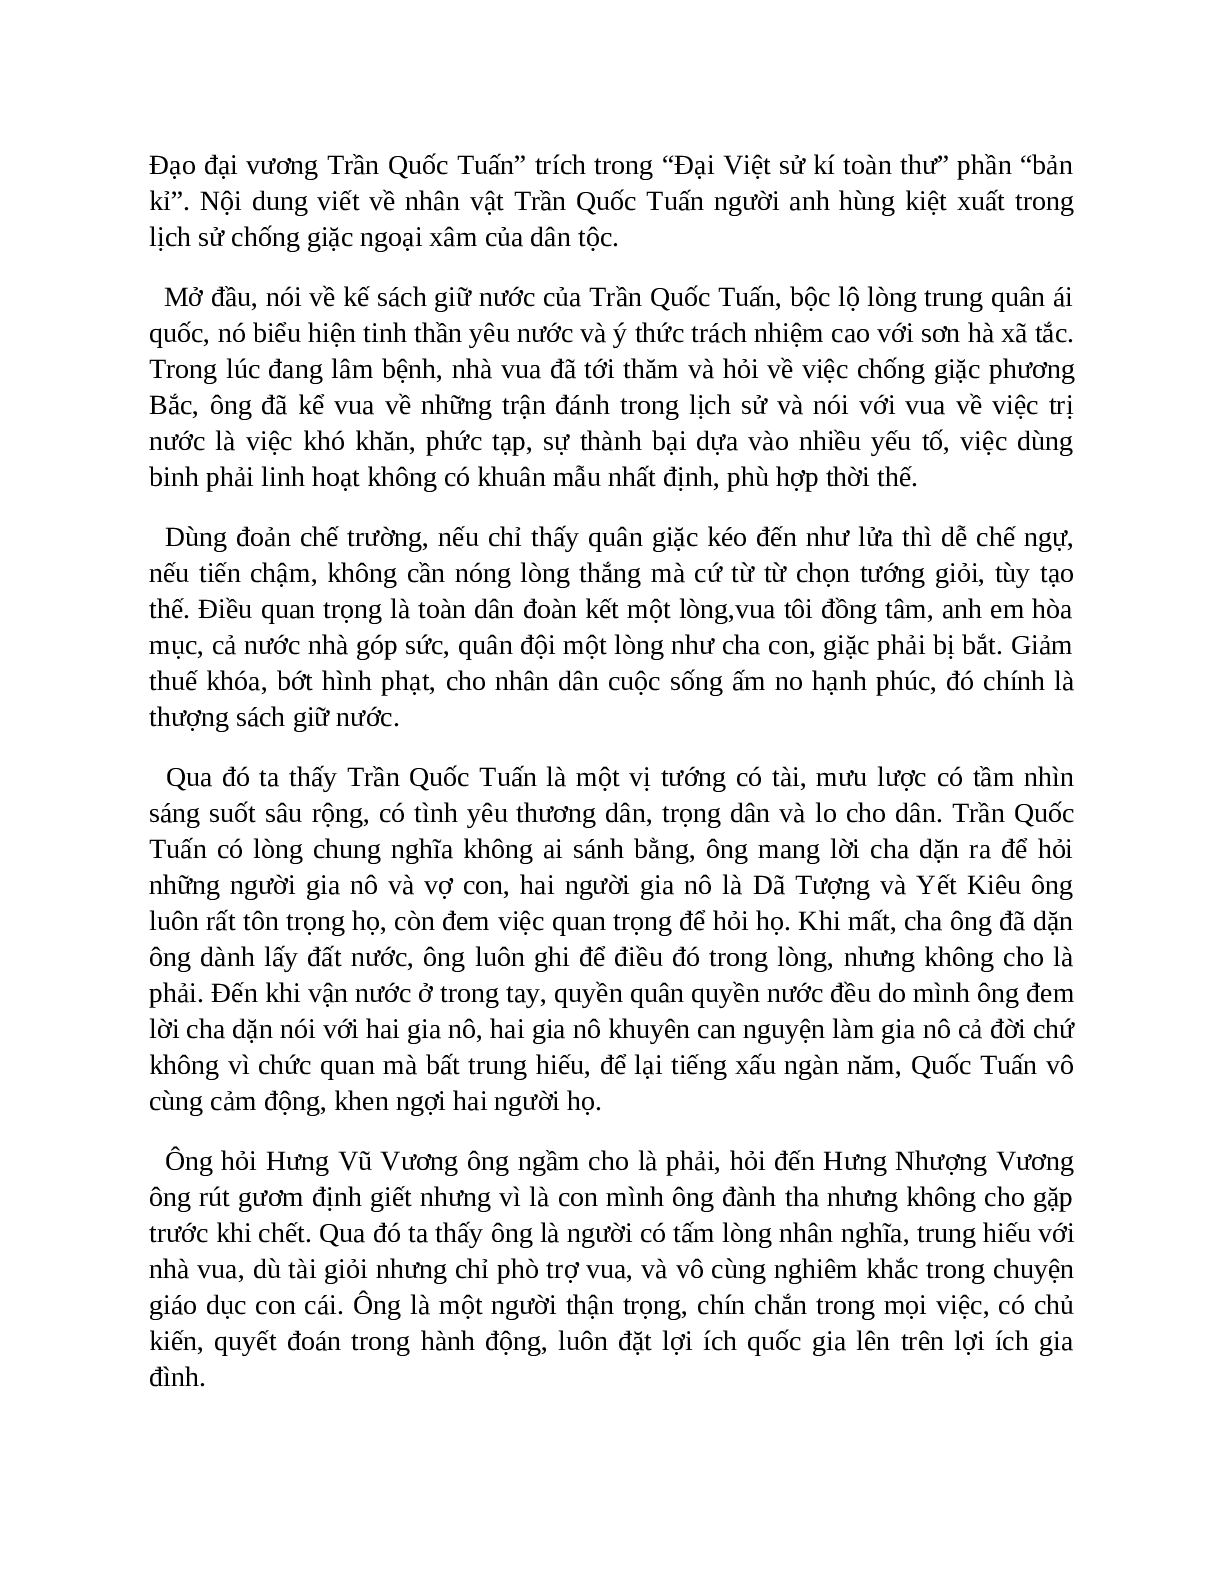 Sơ đồ tư duy bài Hưng Đạo đại vương Trần Quốc Tuấn dễ nhớ, ngắn nhất - Ngữ văn lớp 10 (trang 9)